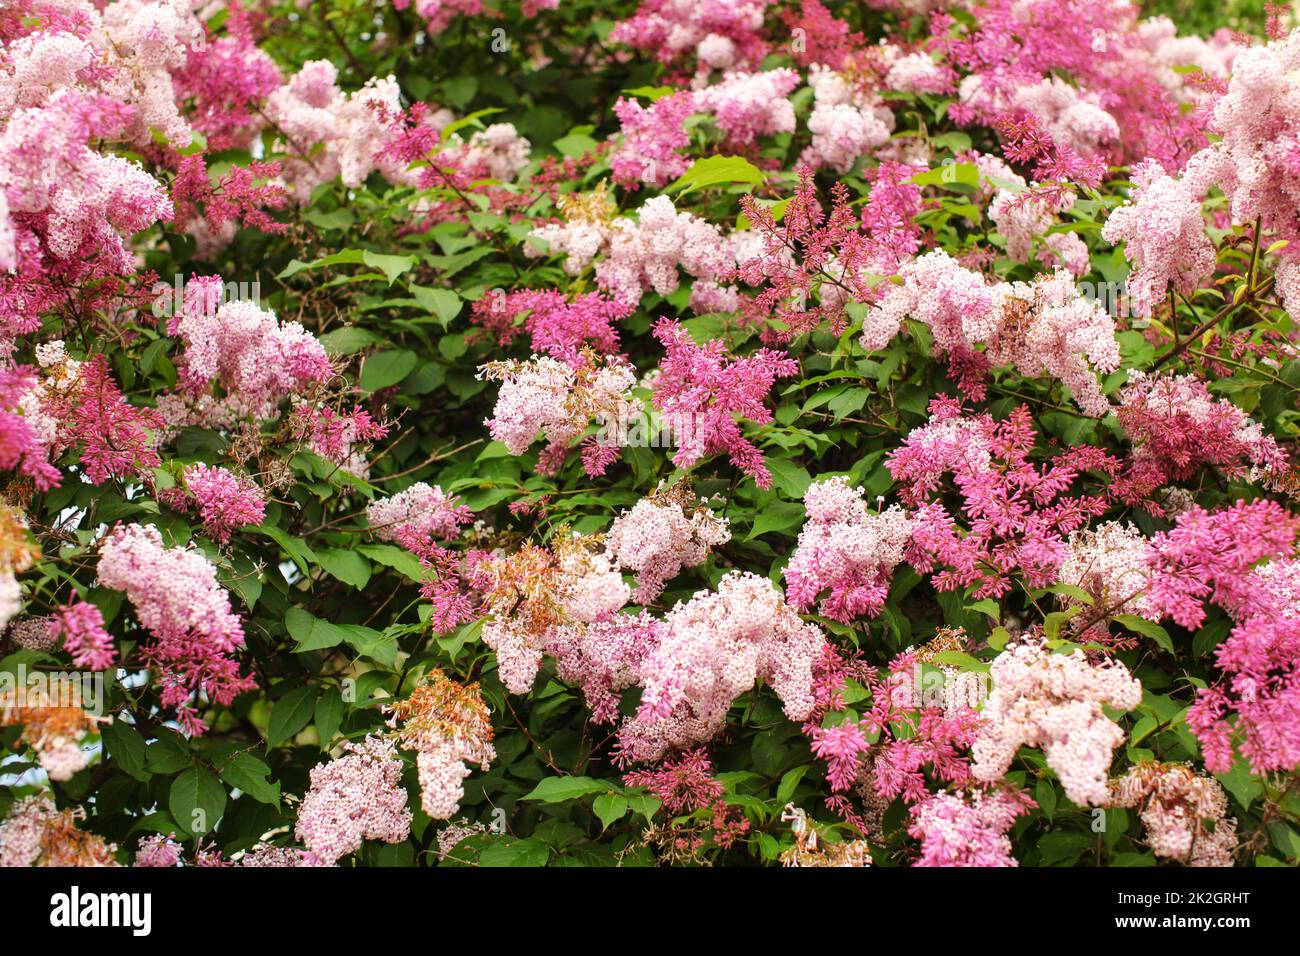 Zwerg koreanischer Flieder (Syringa meyeri) rosa und lila Blumen und grüne Blätter auf kleinen Busch. Frühling Natur Hintergrund. Stockfoto